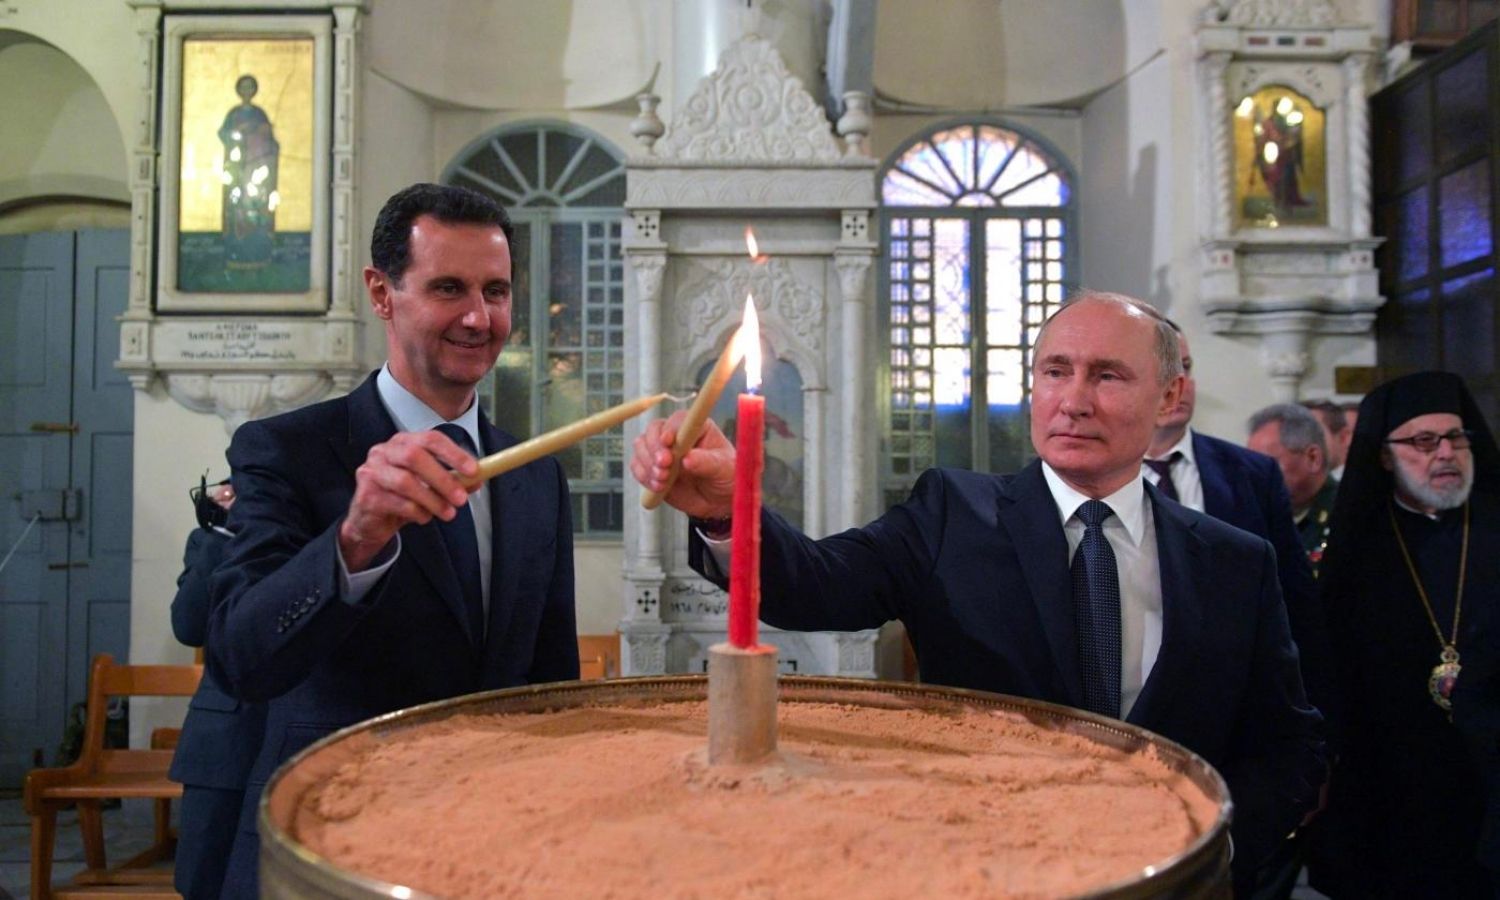 الرئيس الروسي فلاديمير بوتين ورئيس النظام السوري بشار الأسد يزوران الكاتدرائية المريمية في دمشق إحدى أقدم الكنائس الأرثوذكسية اليونانية - 7 كانون الثاني 2020 (AFP)